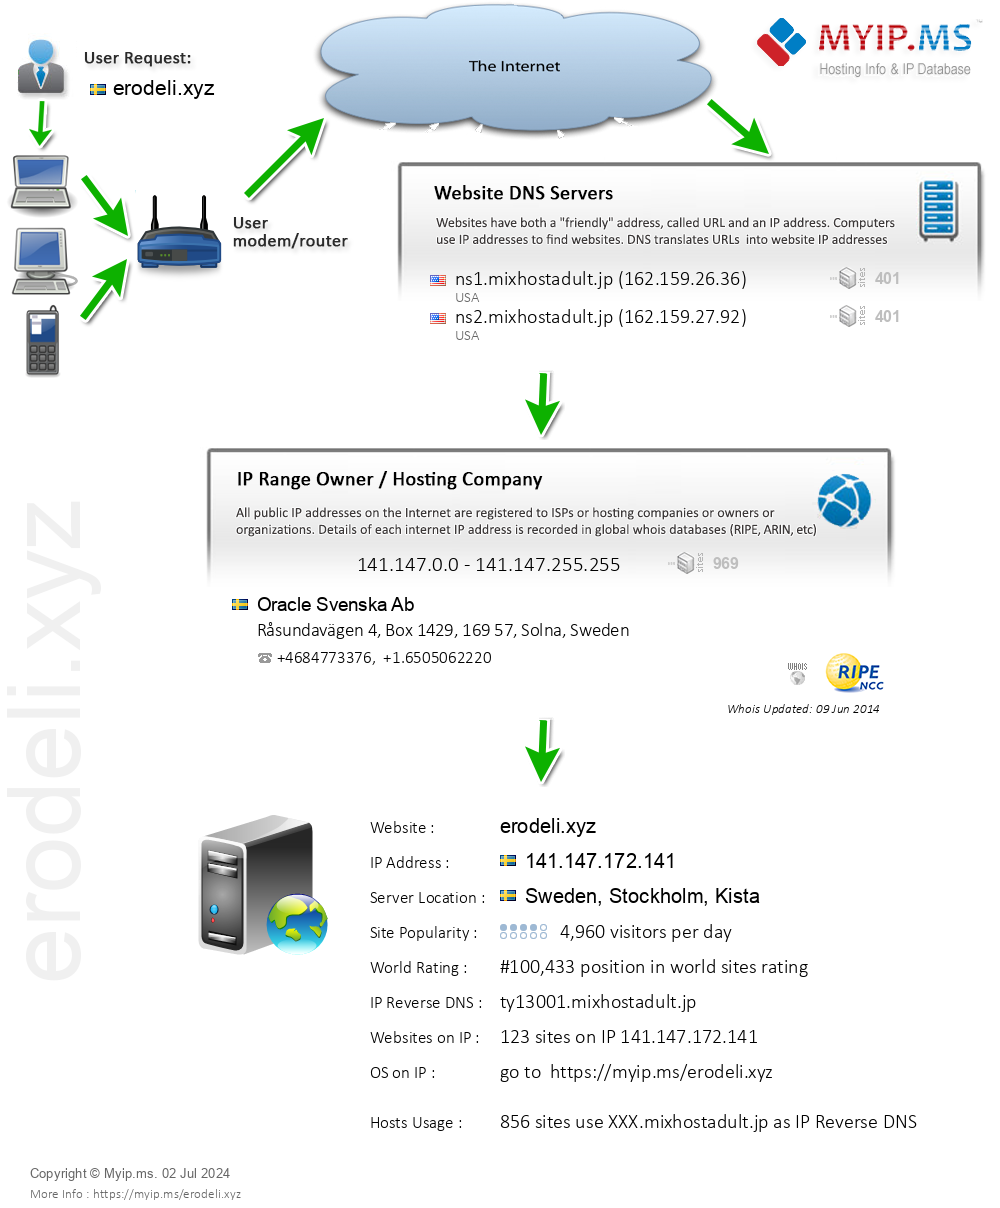 Erodeli.xyz - Website Hosting Visual IP Diagram